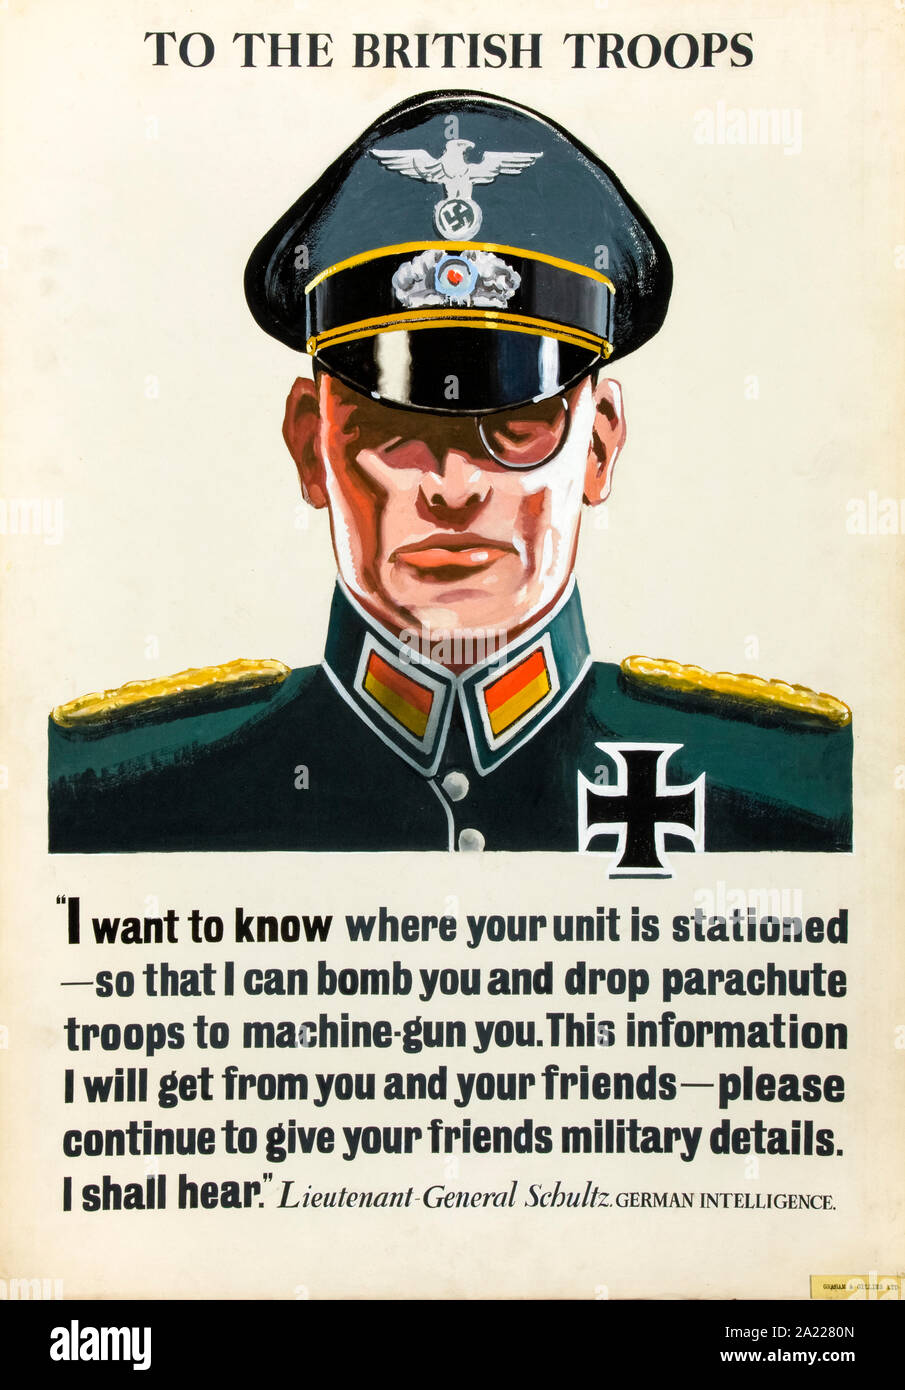 Británico, WW2, descuidado hablar, oficial de Inteligencia alemán con mensaje a las tropas británicas en dar detalles militares a amigos, póster, 1939-1946 Foto de stock